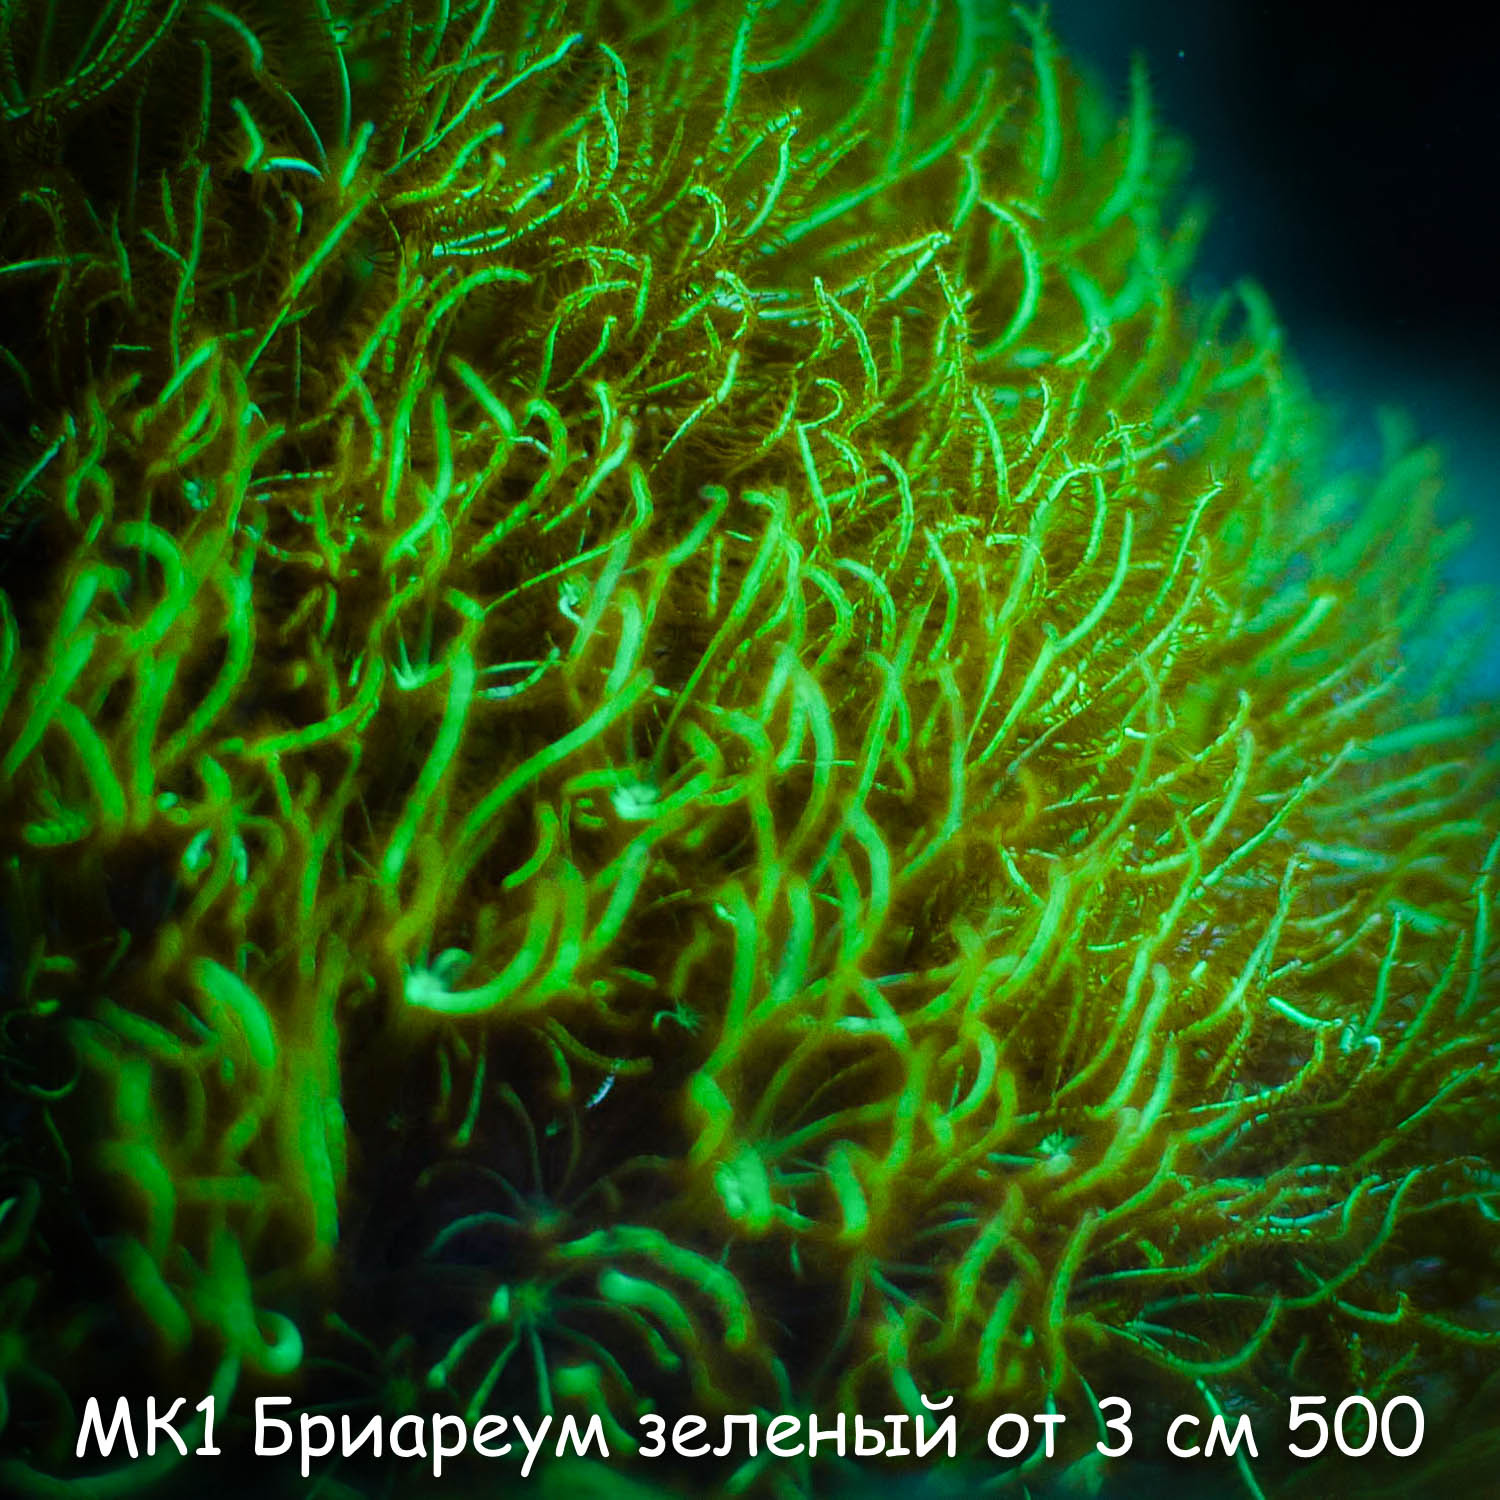 МК1 Бриареум зеленый от 3 см 500